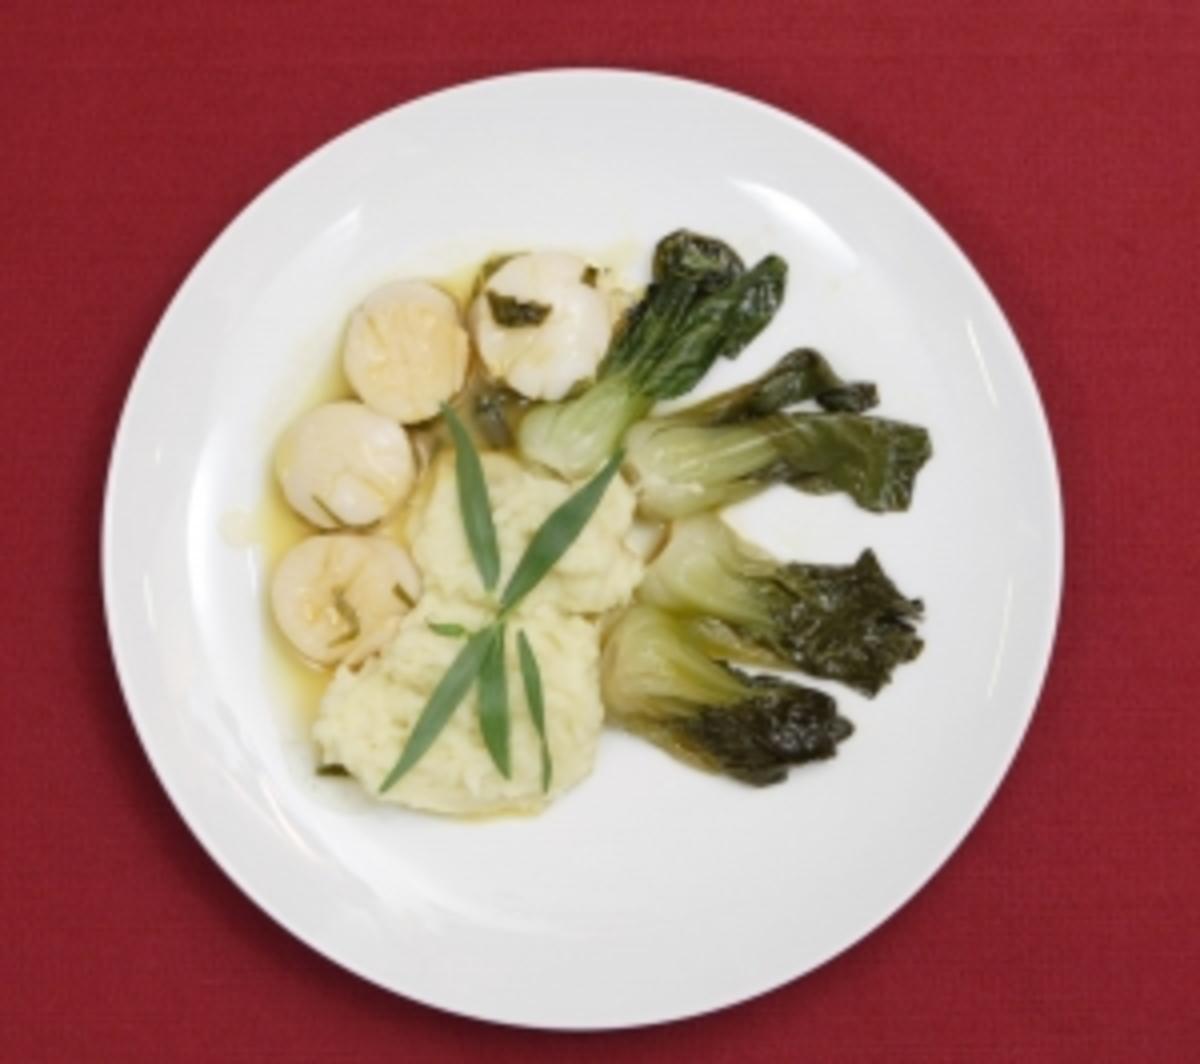 Jakobsmuscheln mit Kokos-Kartoffelbrei und Bok-Choi-Gemüse (Antonia
Langsdorf) - Rezept Von Einsendungen Das perfekte Promi Dinner